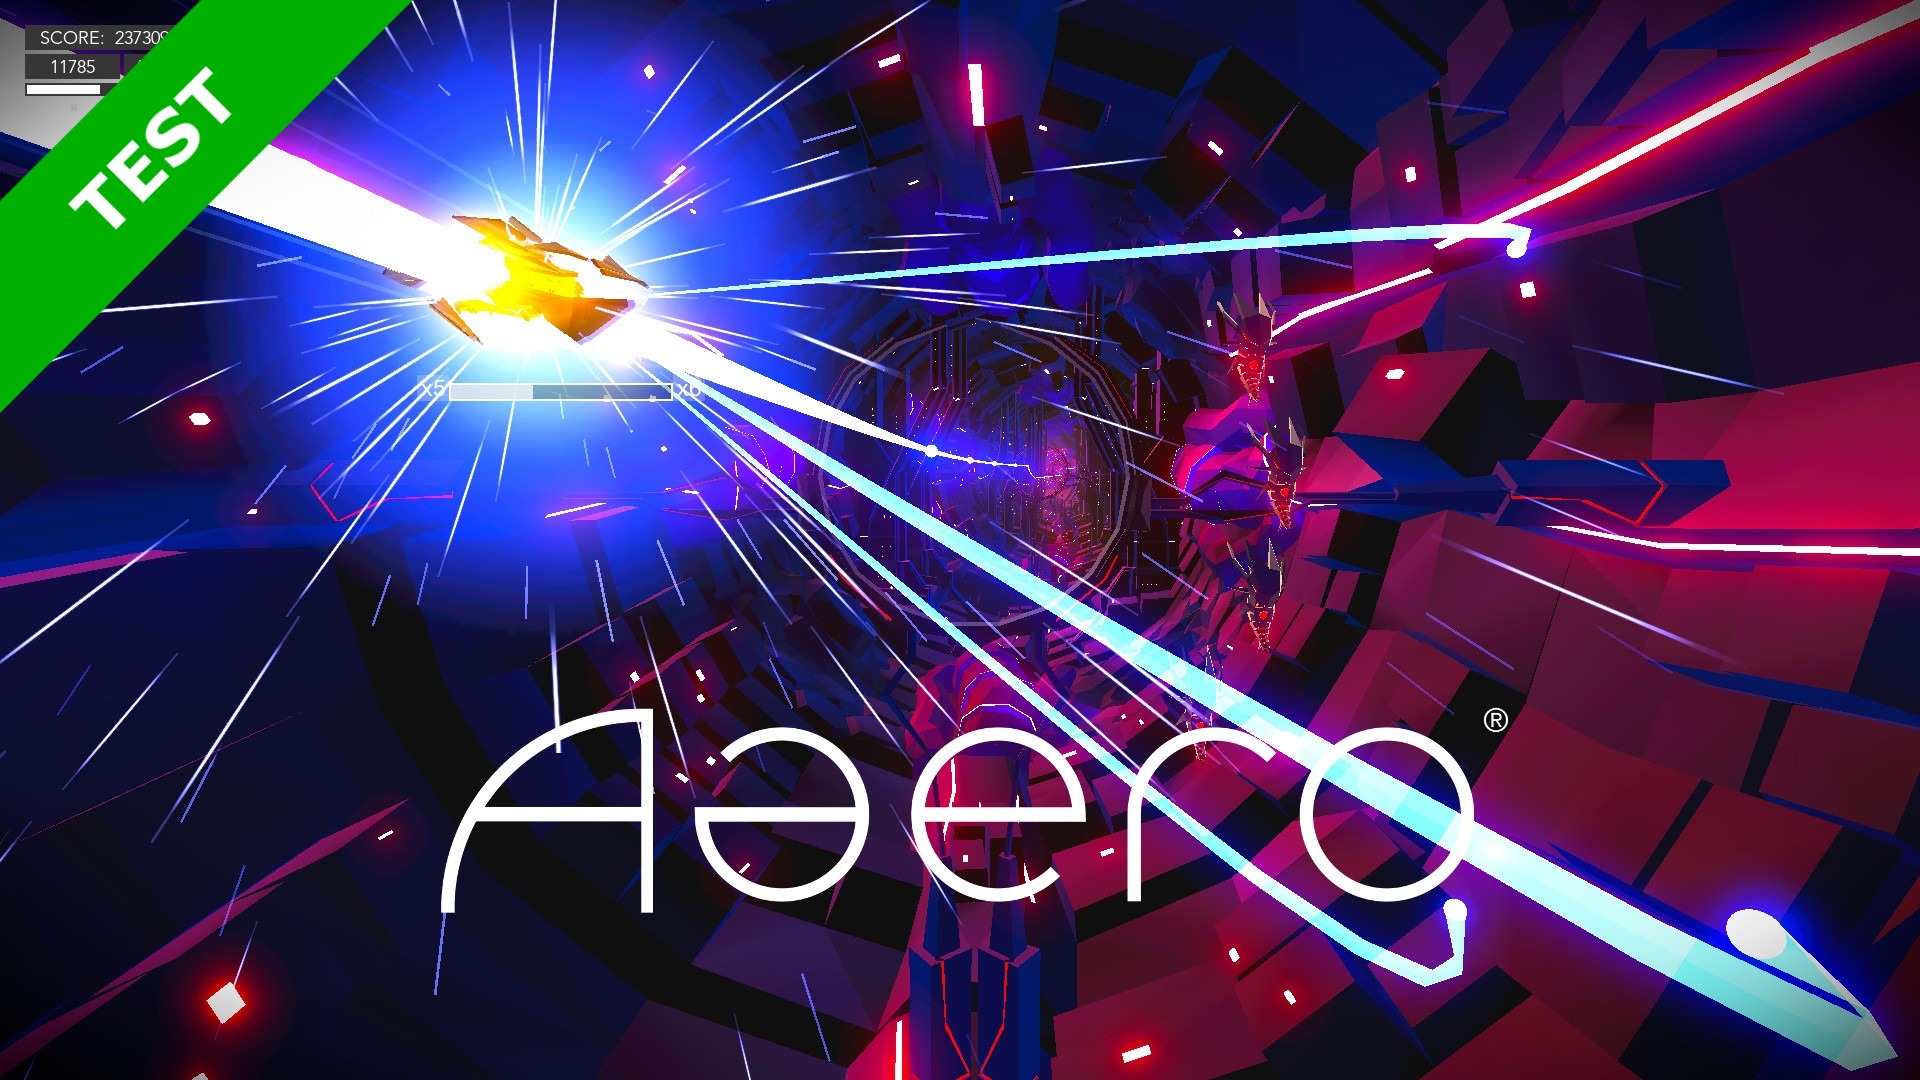 Aaero -Xbox One